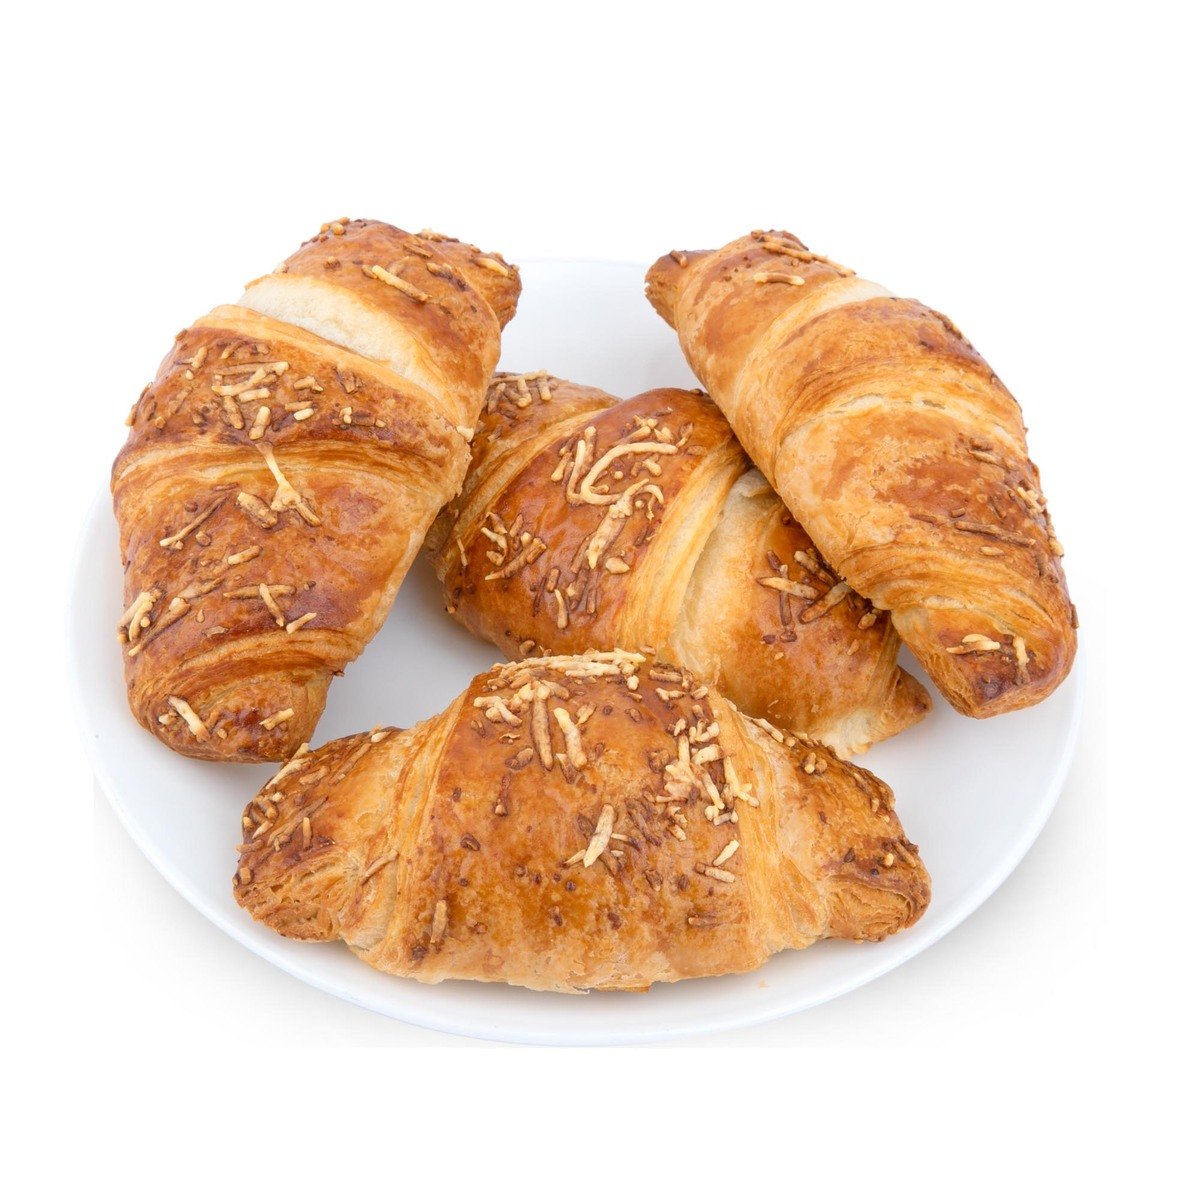 اشتري قم بشراء كرواسون جبنة جامبو قطعة واحدة Online at Best Price من الموقع - من لولو هايبر ماركت Croissants في السعودية